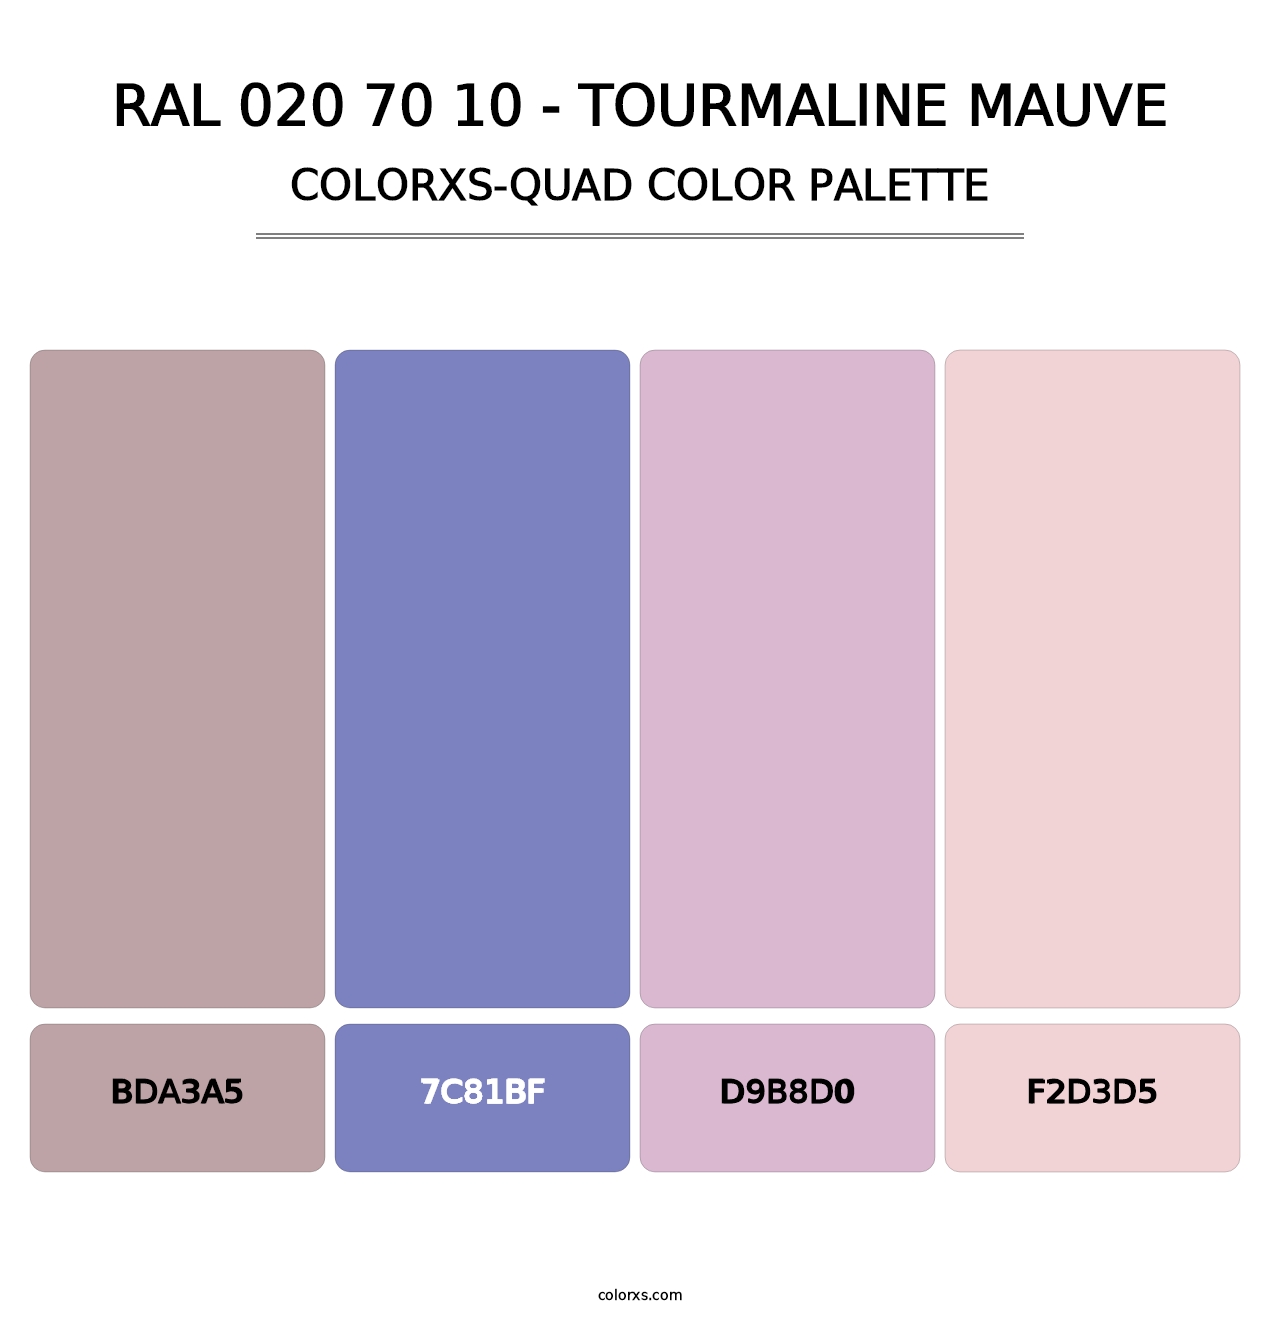 RAL 020 70 10 - Tourmaline Mauve - Colorxs Quad Palette